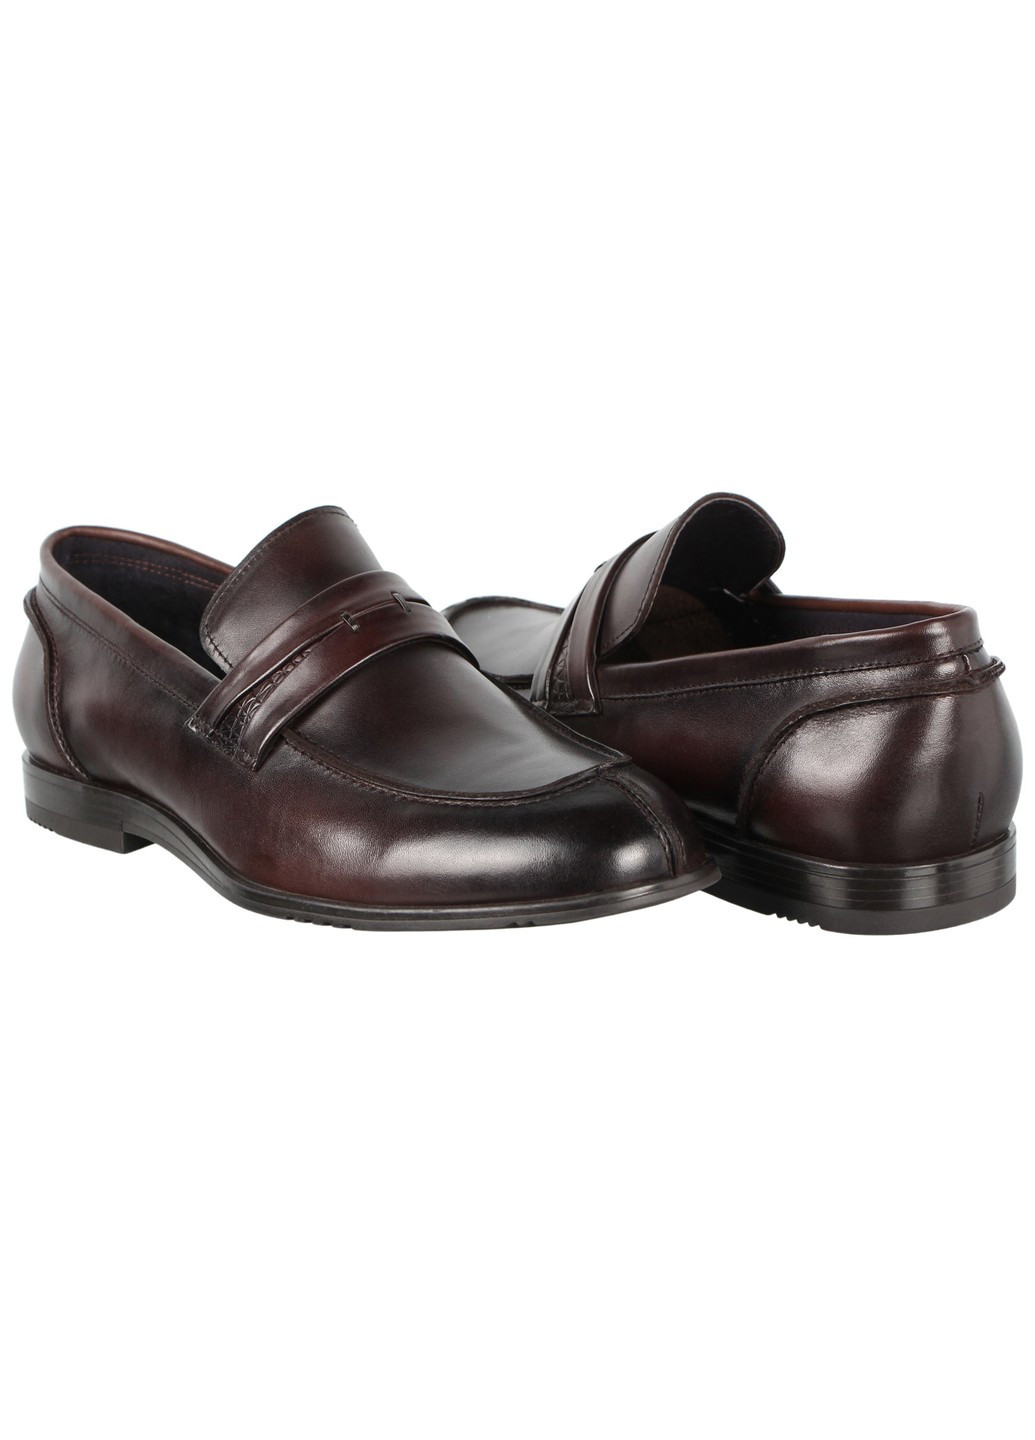 Коричневые мужские классические туфли 197351 Buts без шнурков